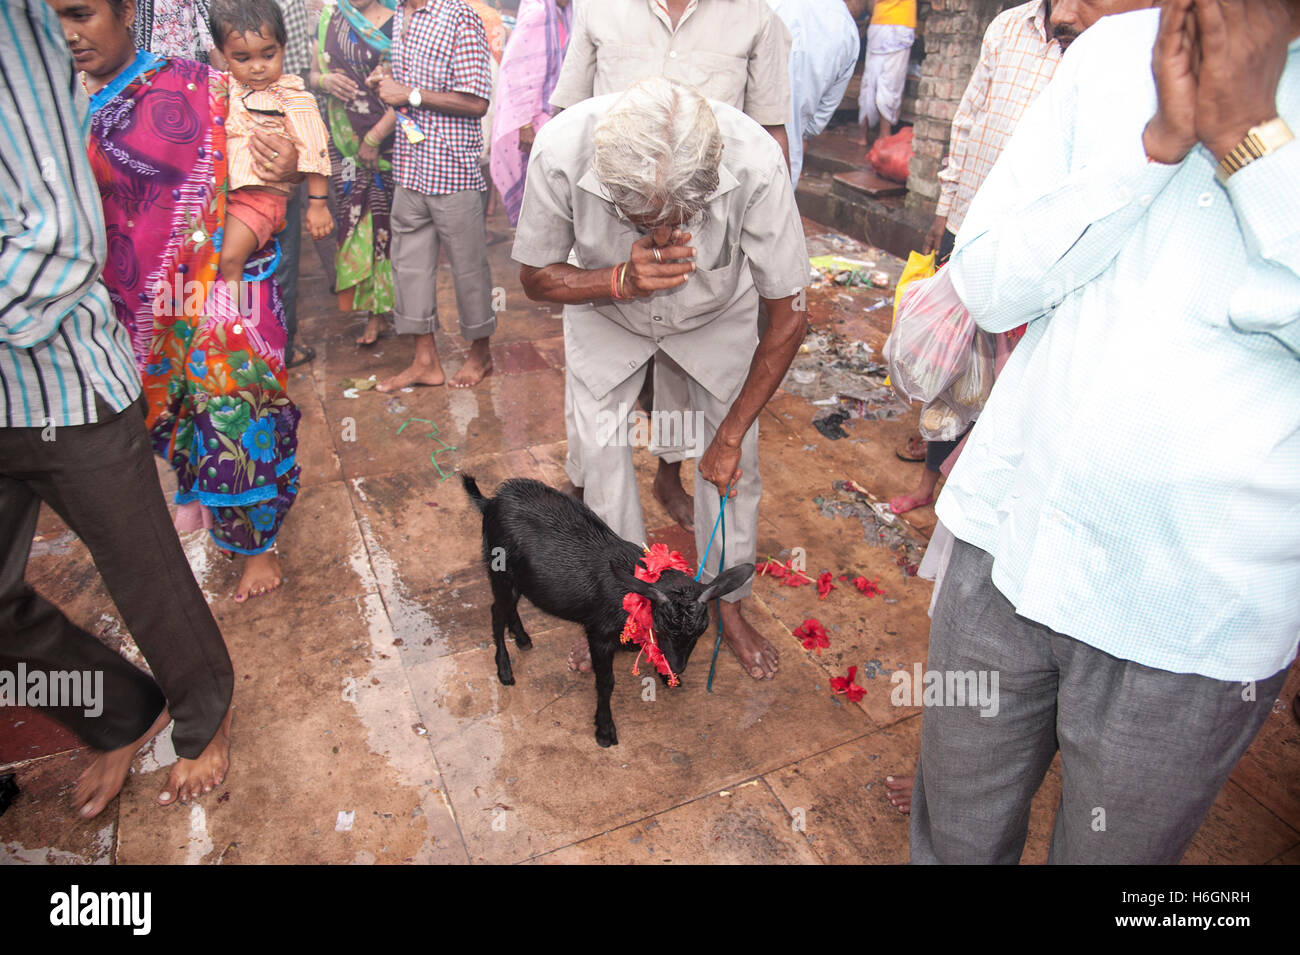 Le culte de l'homme hindou une chèvre pour sacrifier à la déesse comme souhaits remplies par la déesse Kali ghat Kolkata West Bengal India. Banque D'Images